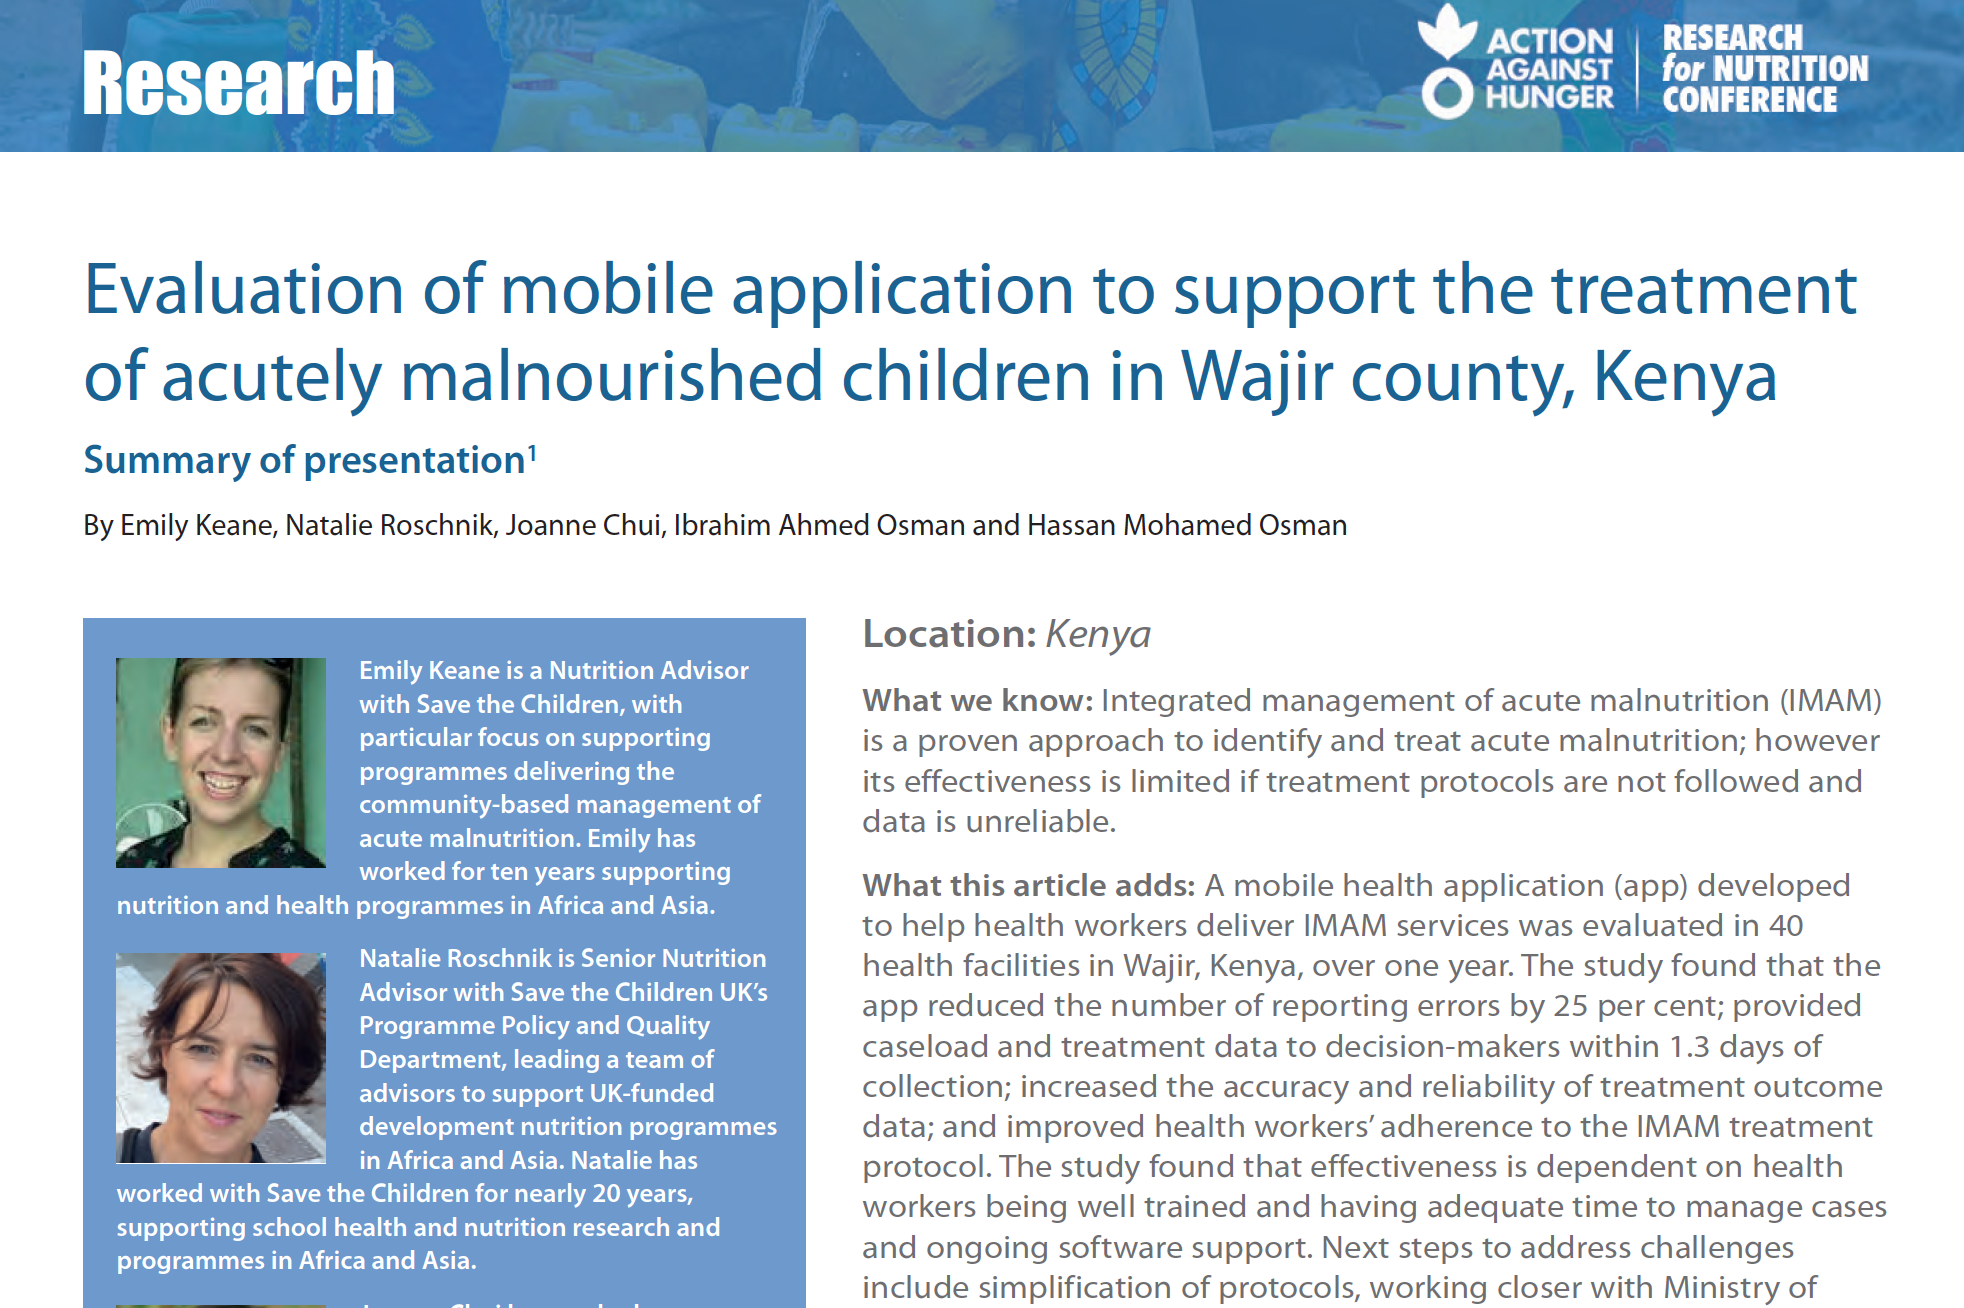 Photo: Action contre la faim_Résumé de recherche Présentation_ Application mobile IMAM au Kenya